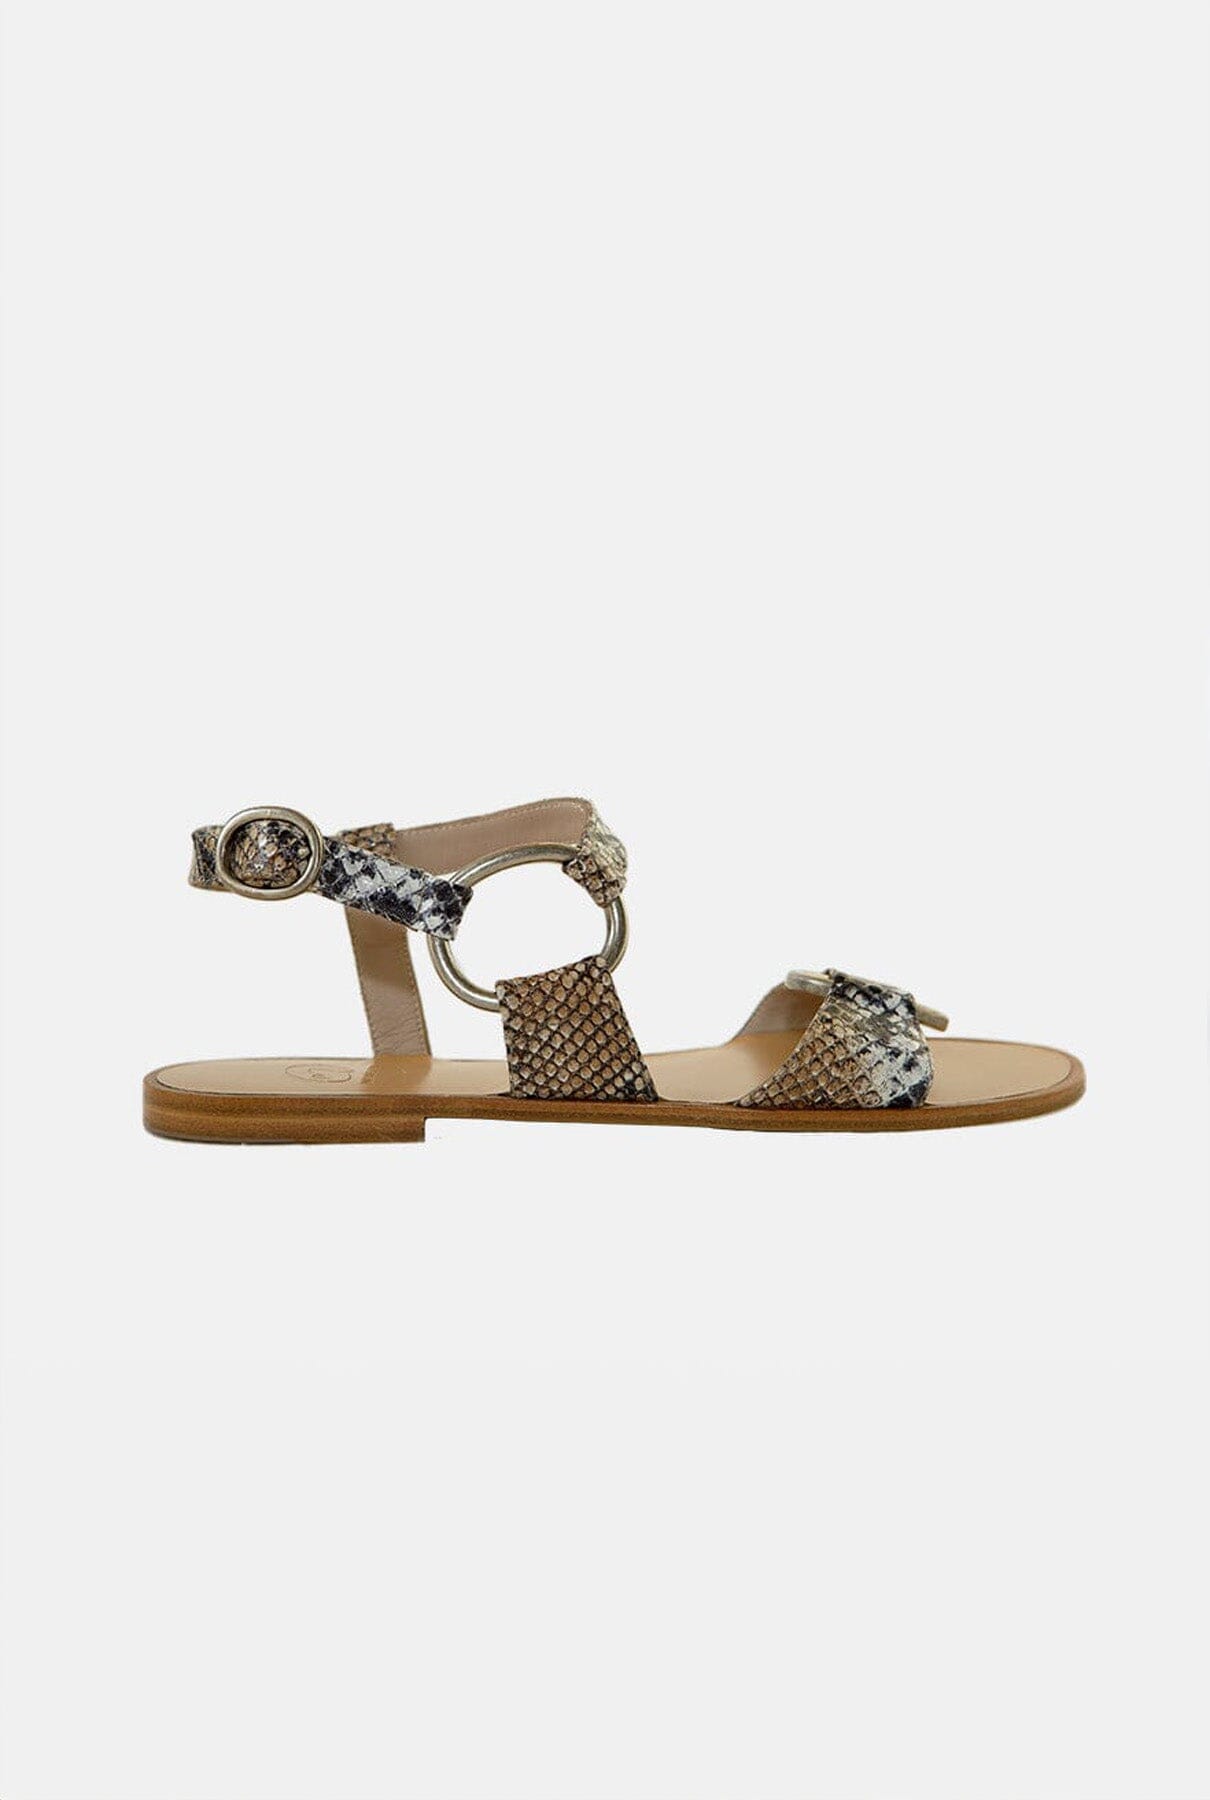 ITACA SNAKE BLANCO Flat sandals Micuir 